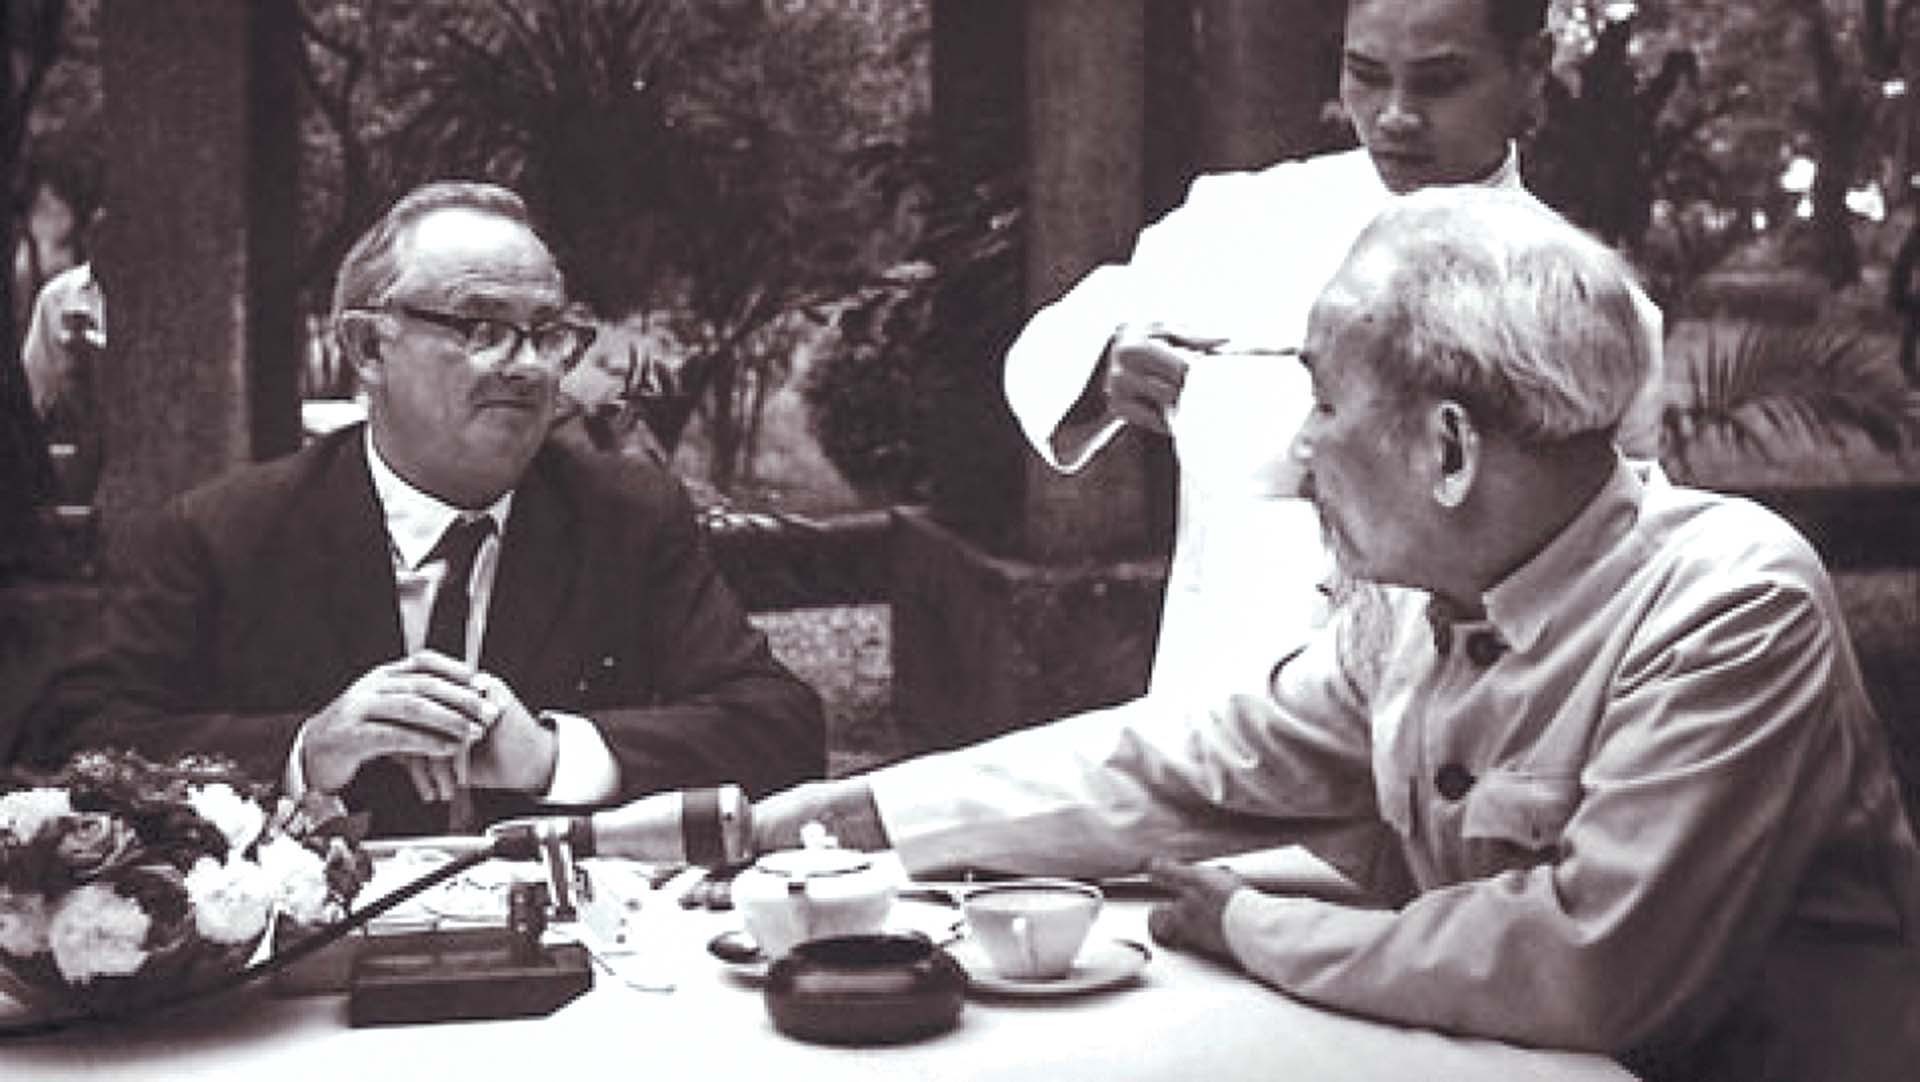 Chủ tịch Hồ Chí Minh và Đảng linh hoạt trong xác định đối tượng, đối tác, có sách lược mềm dẻo, phù hợp để có lợi cho cách mạng.